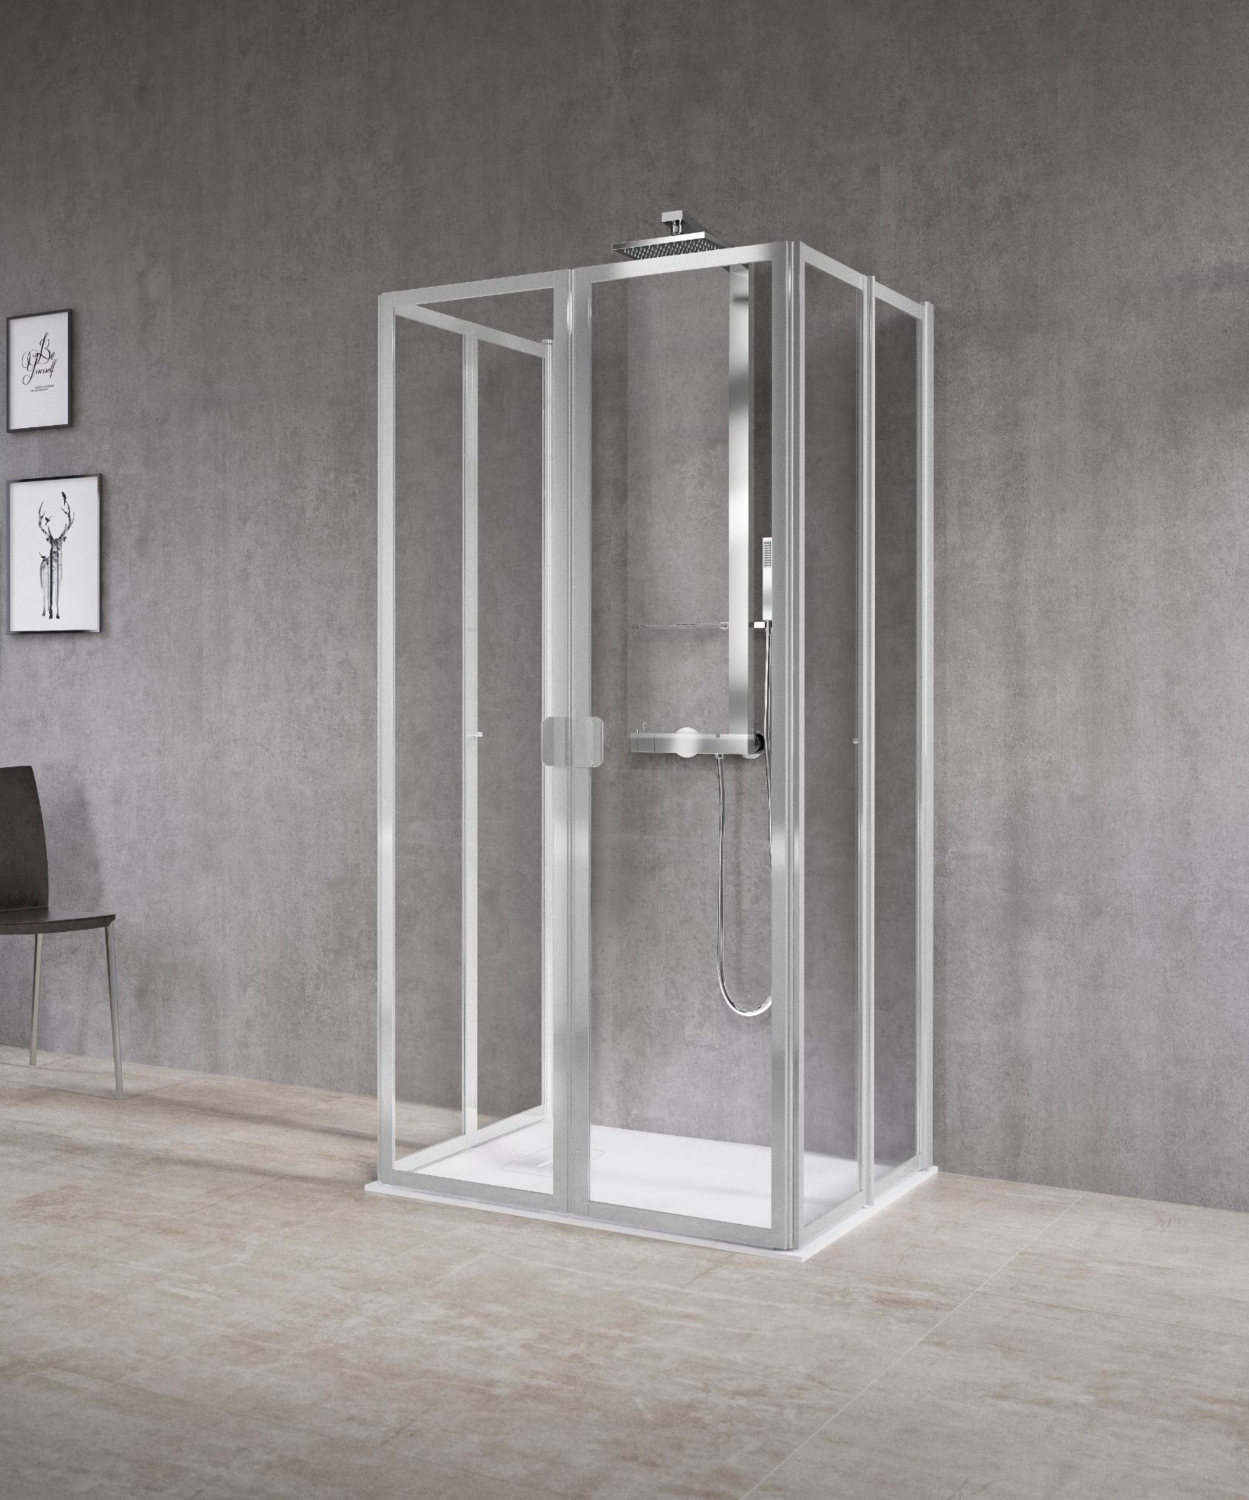 Porte de douche Free 2 côté pour montage en U - Profil blanc verre niva Novellini